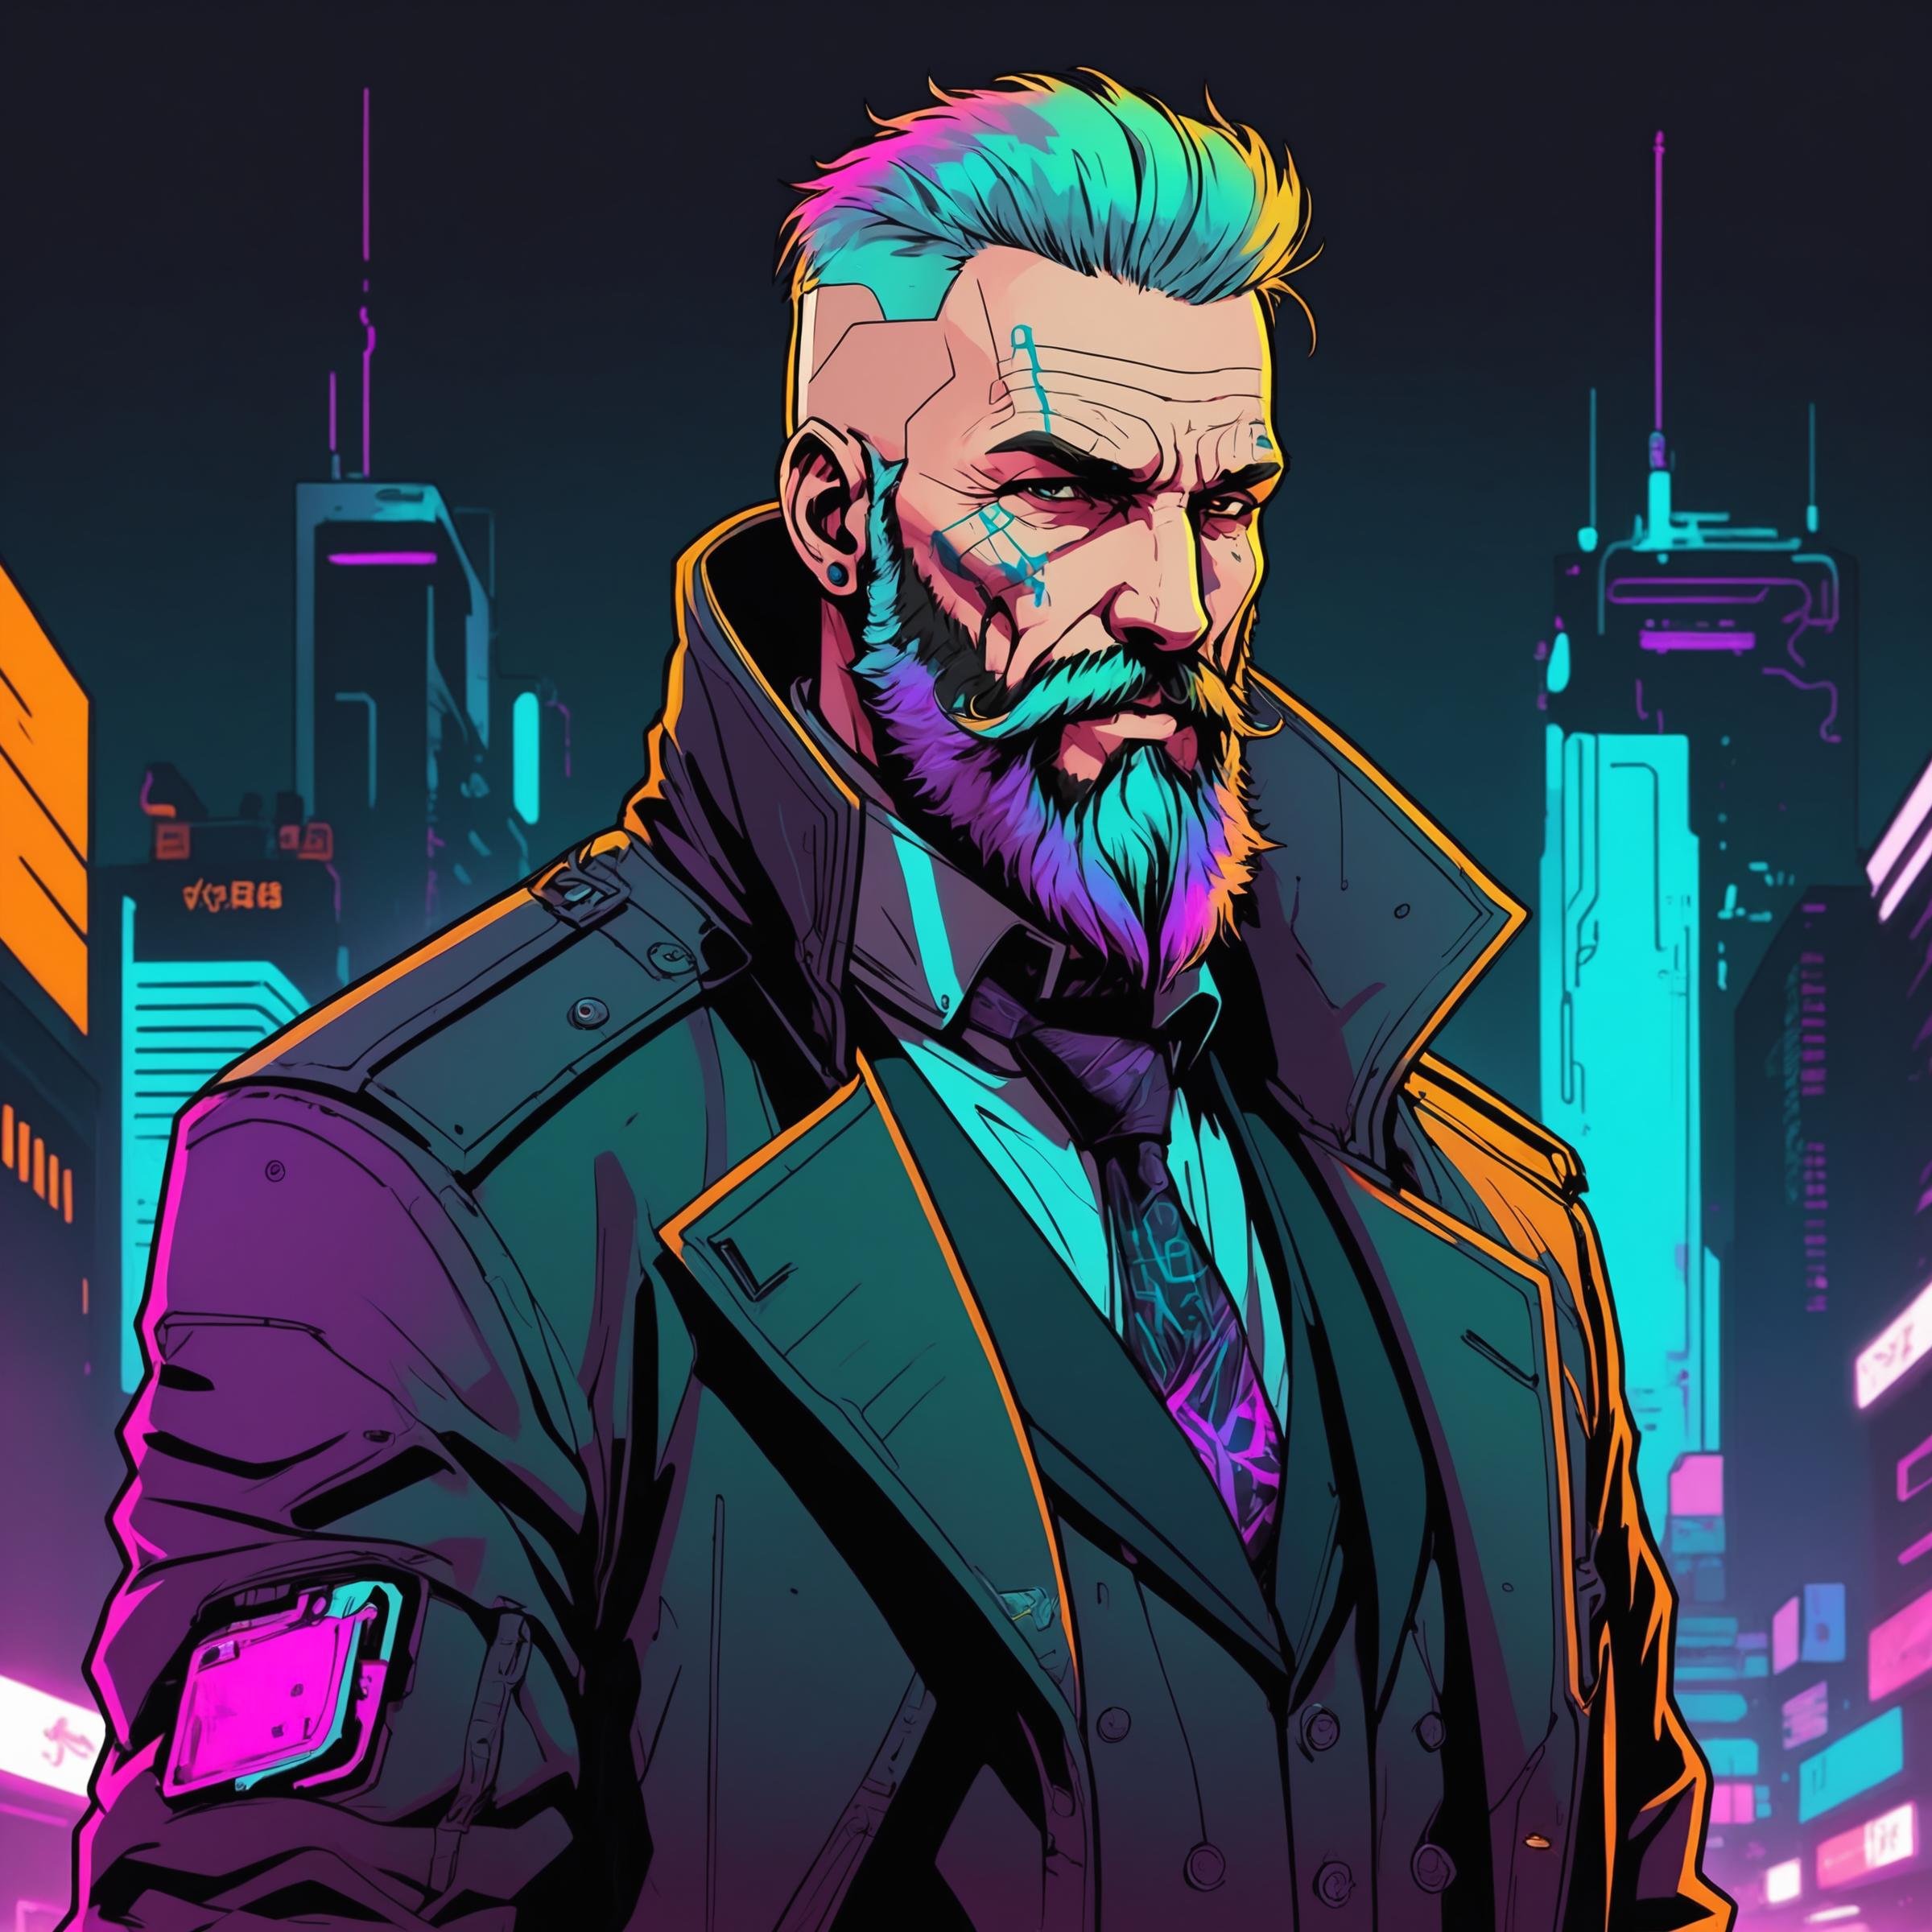 (line art art), 2D, a old hitman, beard, cyberpunk, cyberpunk outfit, man, colorful